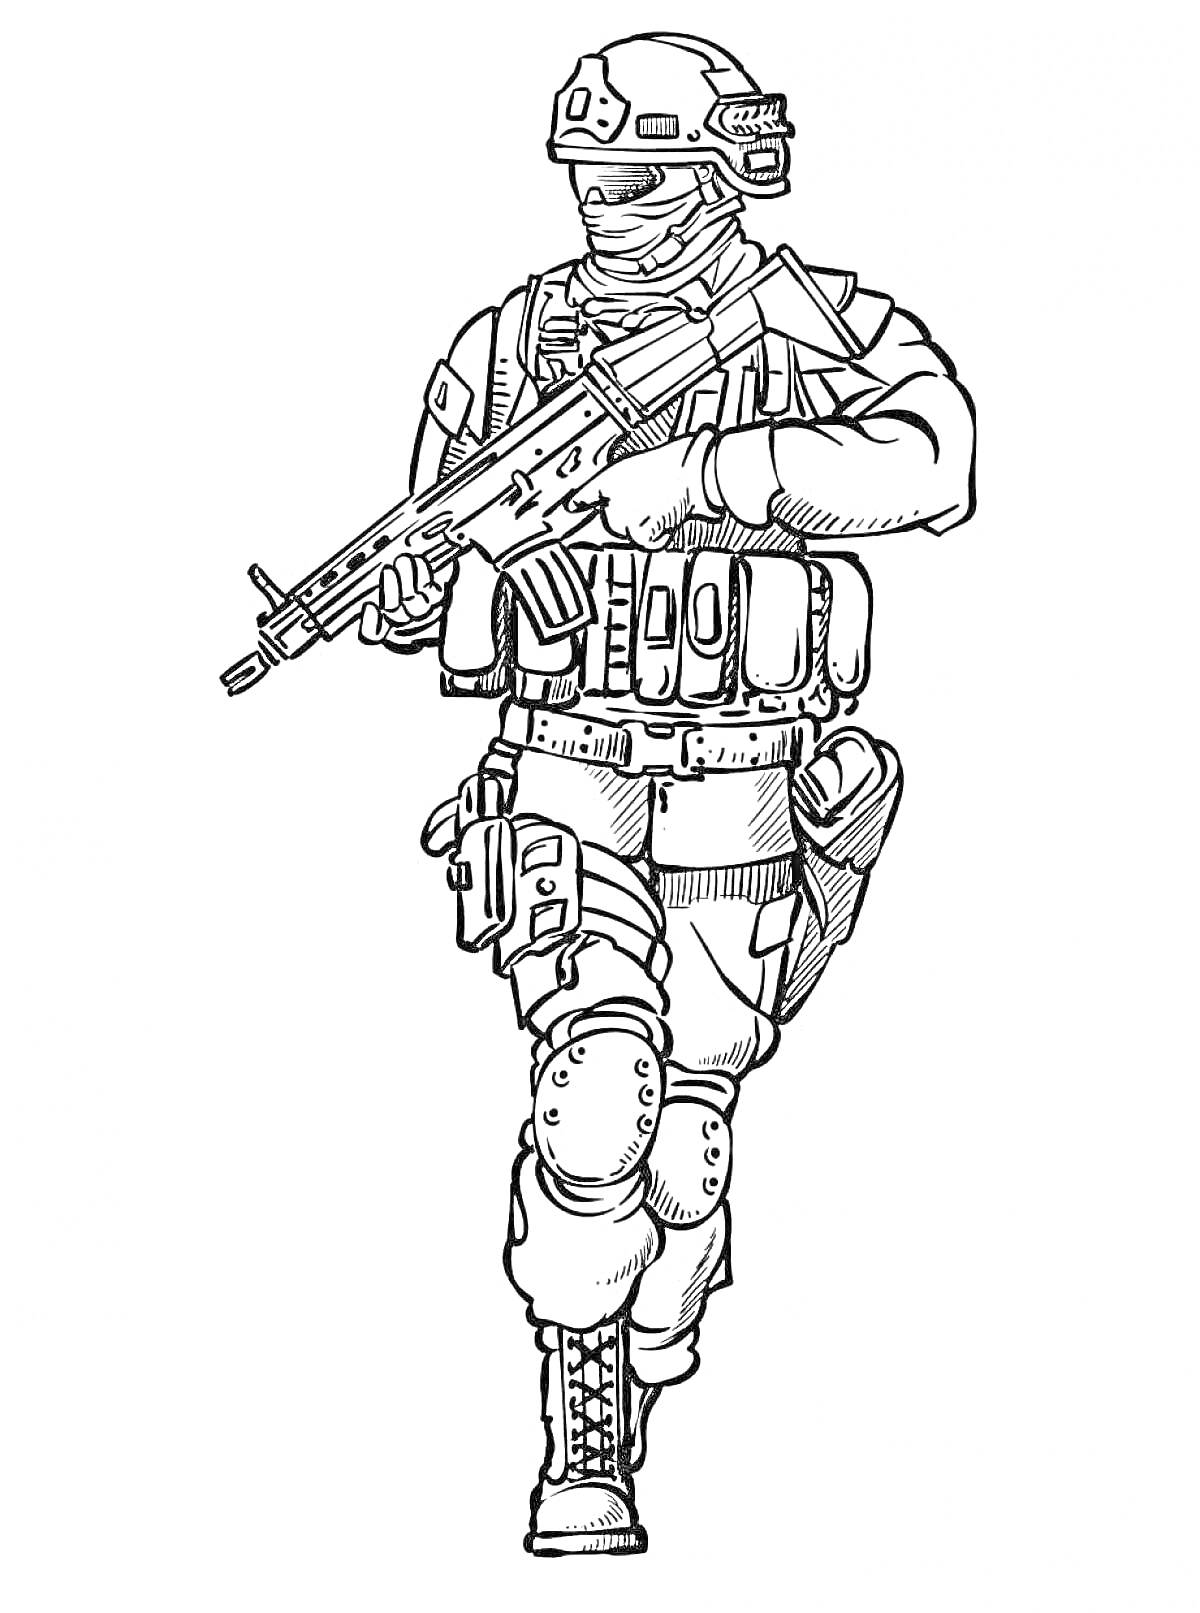 Солдат в экипировке с автоматом, бронежилетом, шлемом и наколенниками